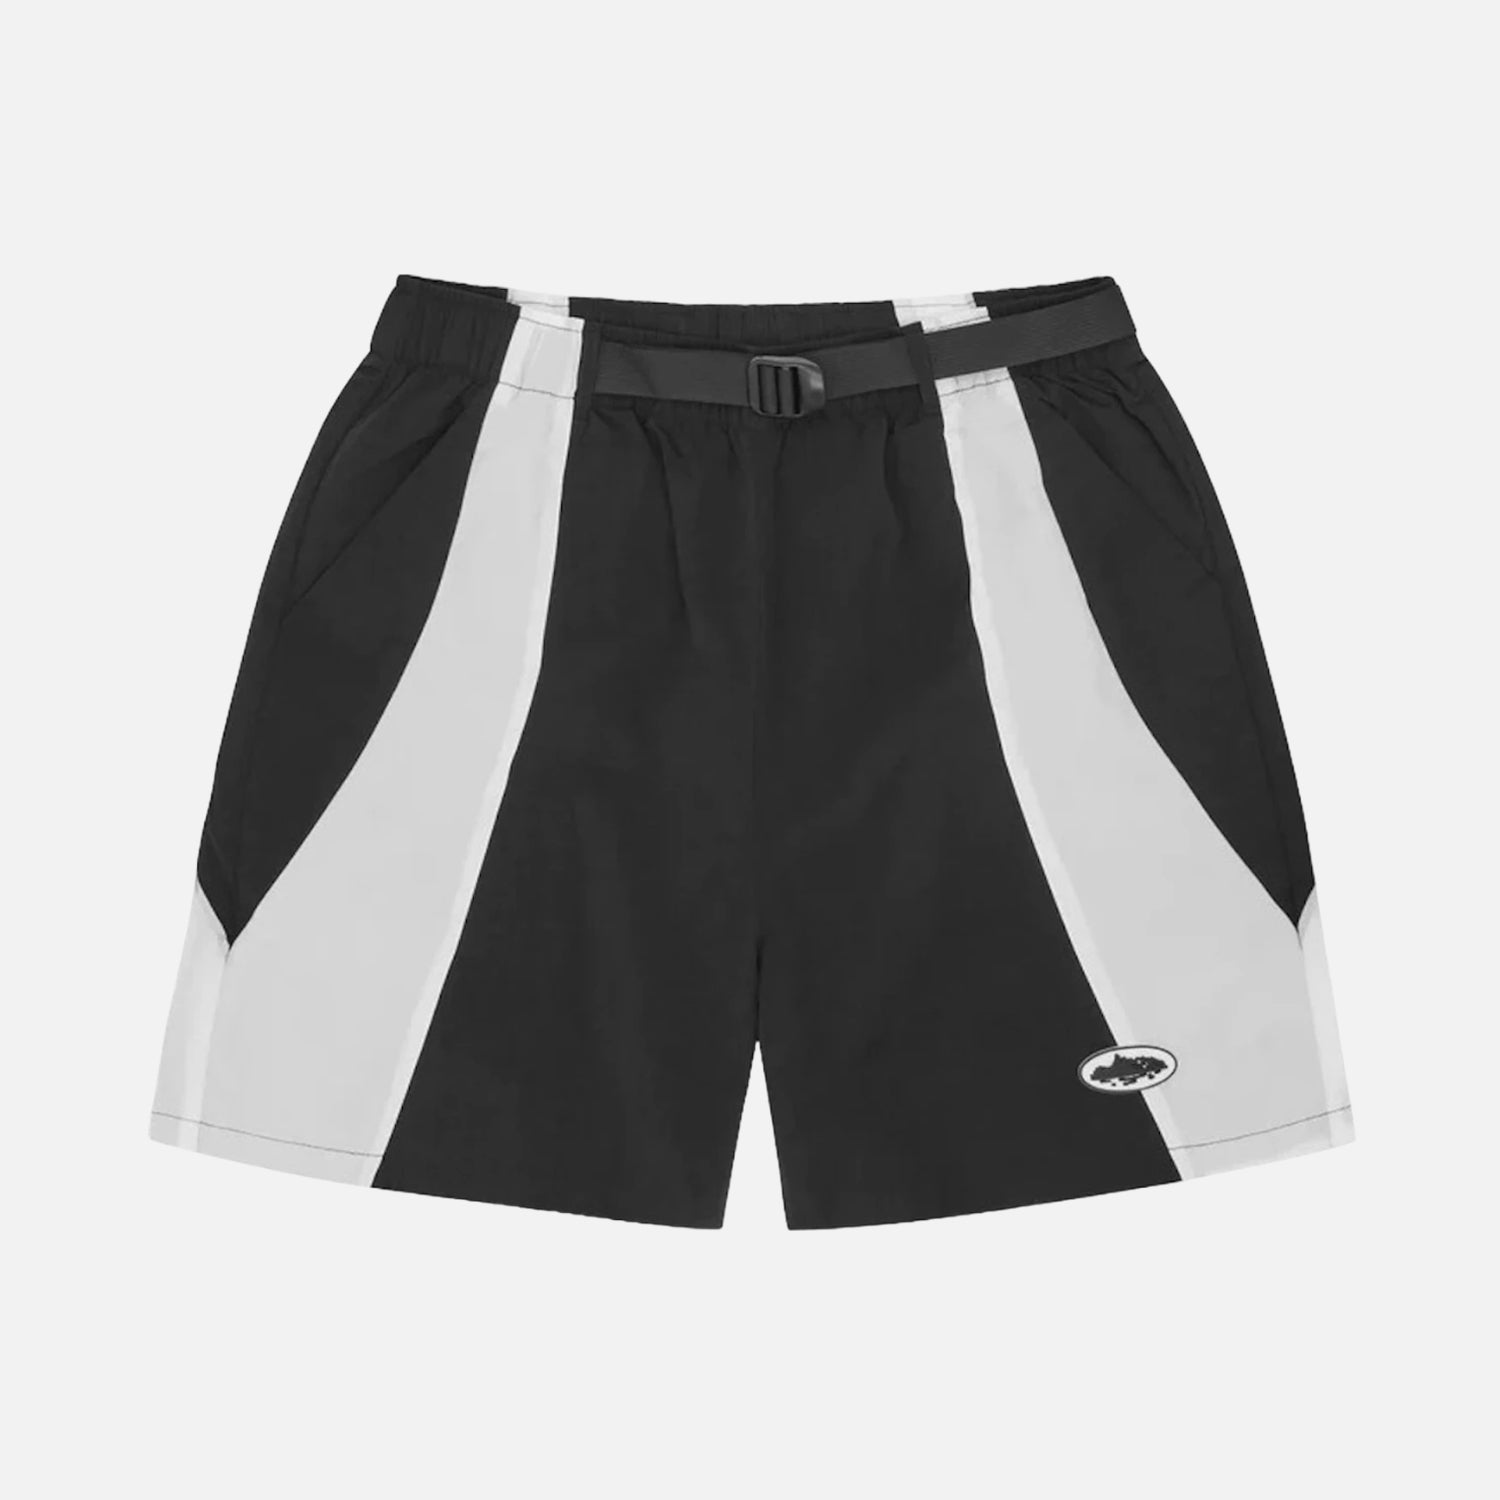 Corteiz RTW Spring Shorts - Black / White